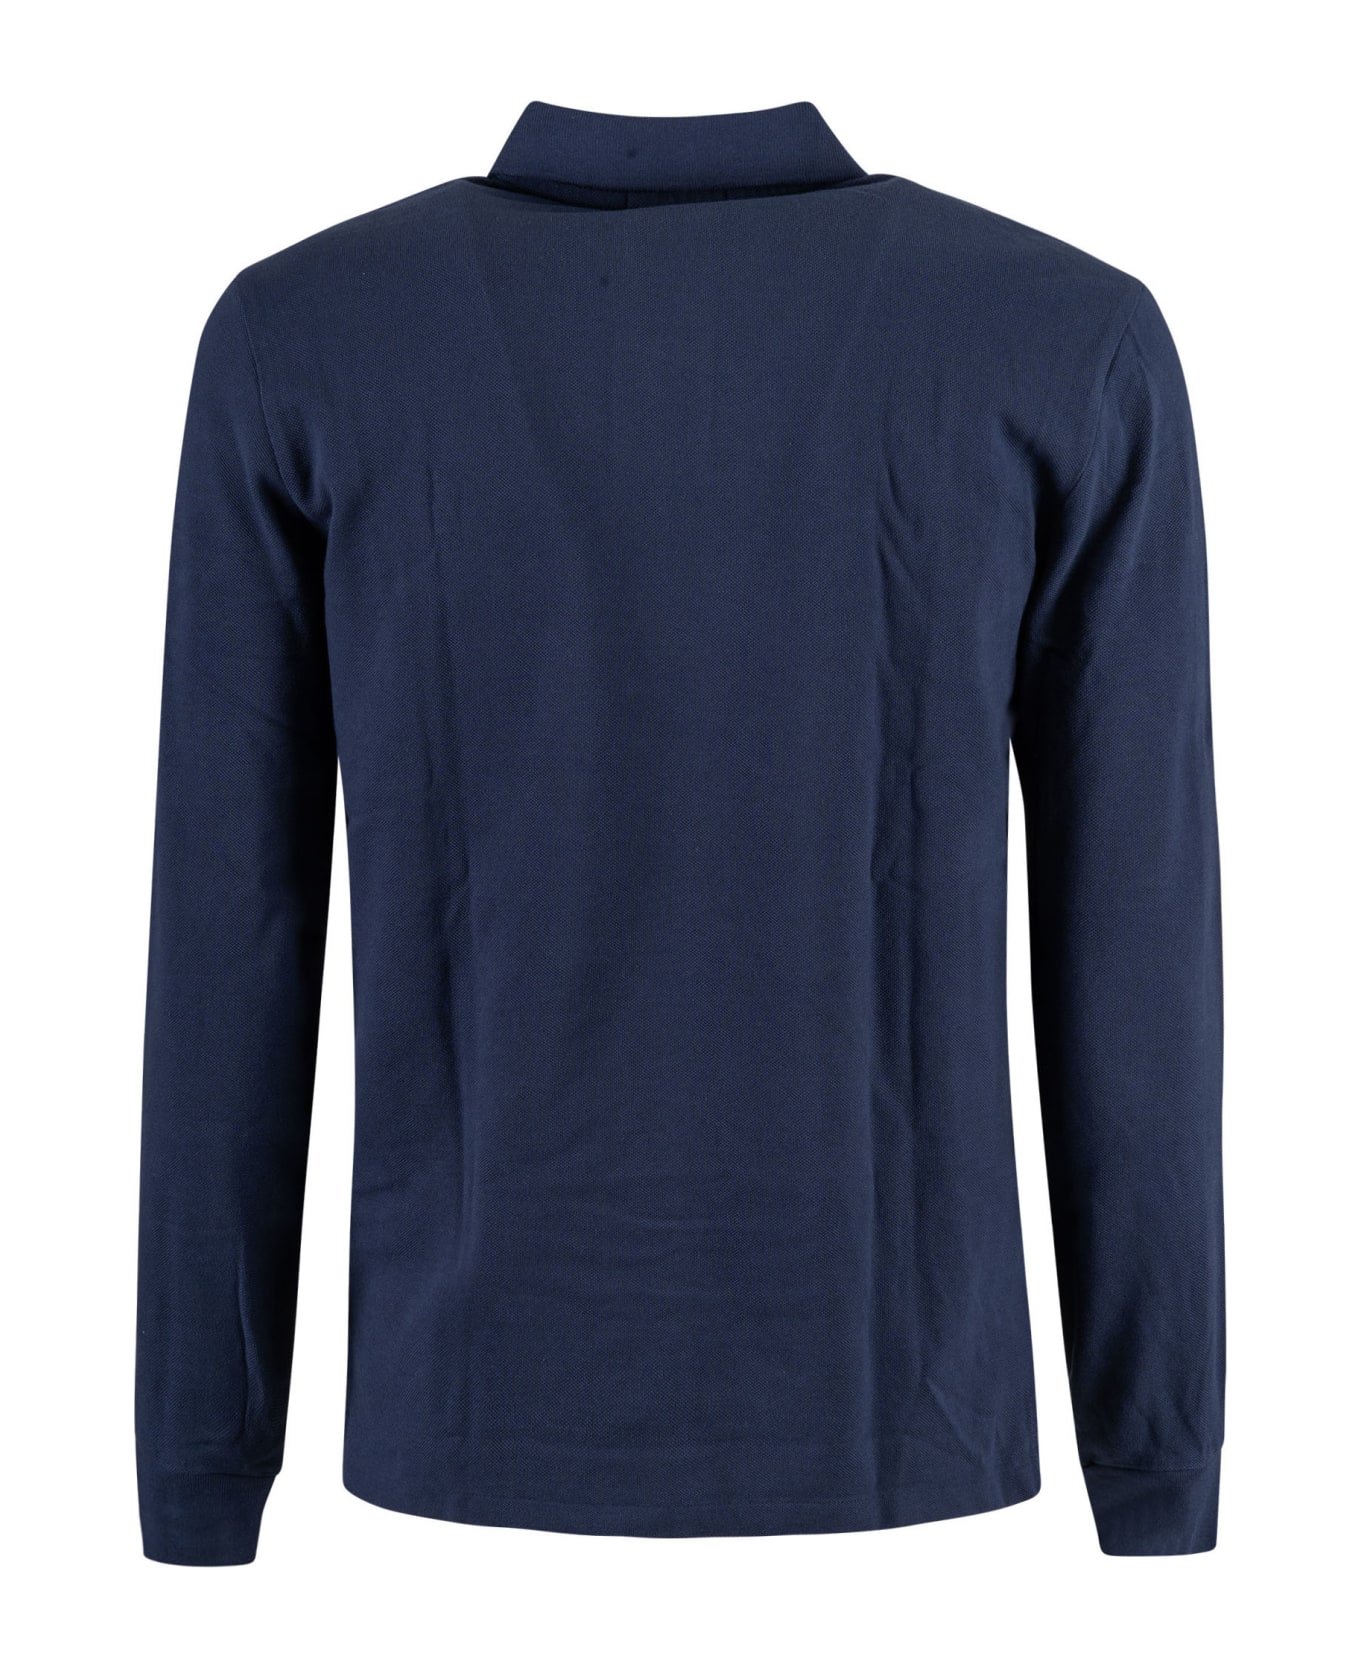 Ralph Lauren Long-sleeved Polo Shirt - Newport Navy